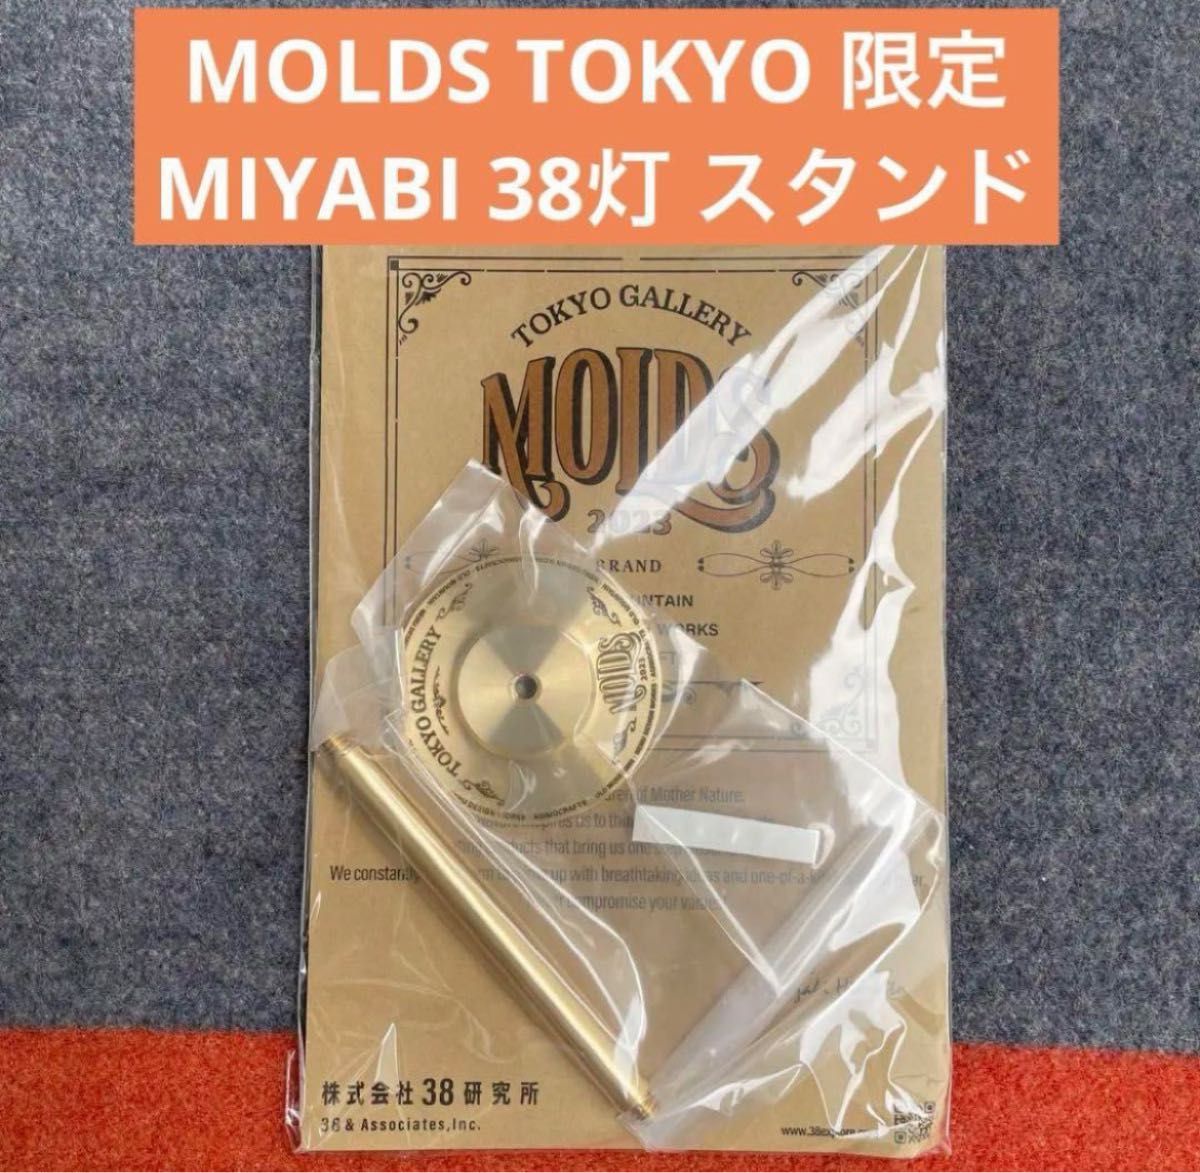 販売質屋 MOLDS TOKYO 限定 MIYABI 38灯 真鍮 スタンド 38explore